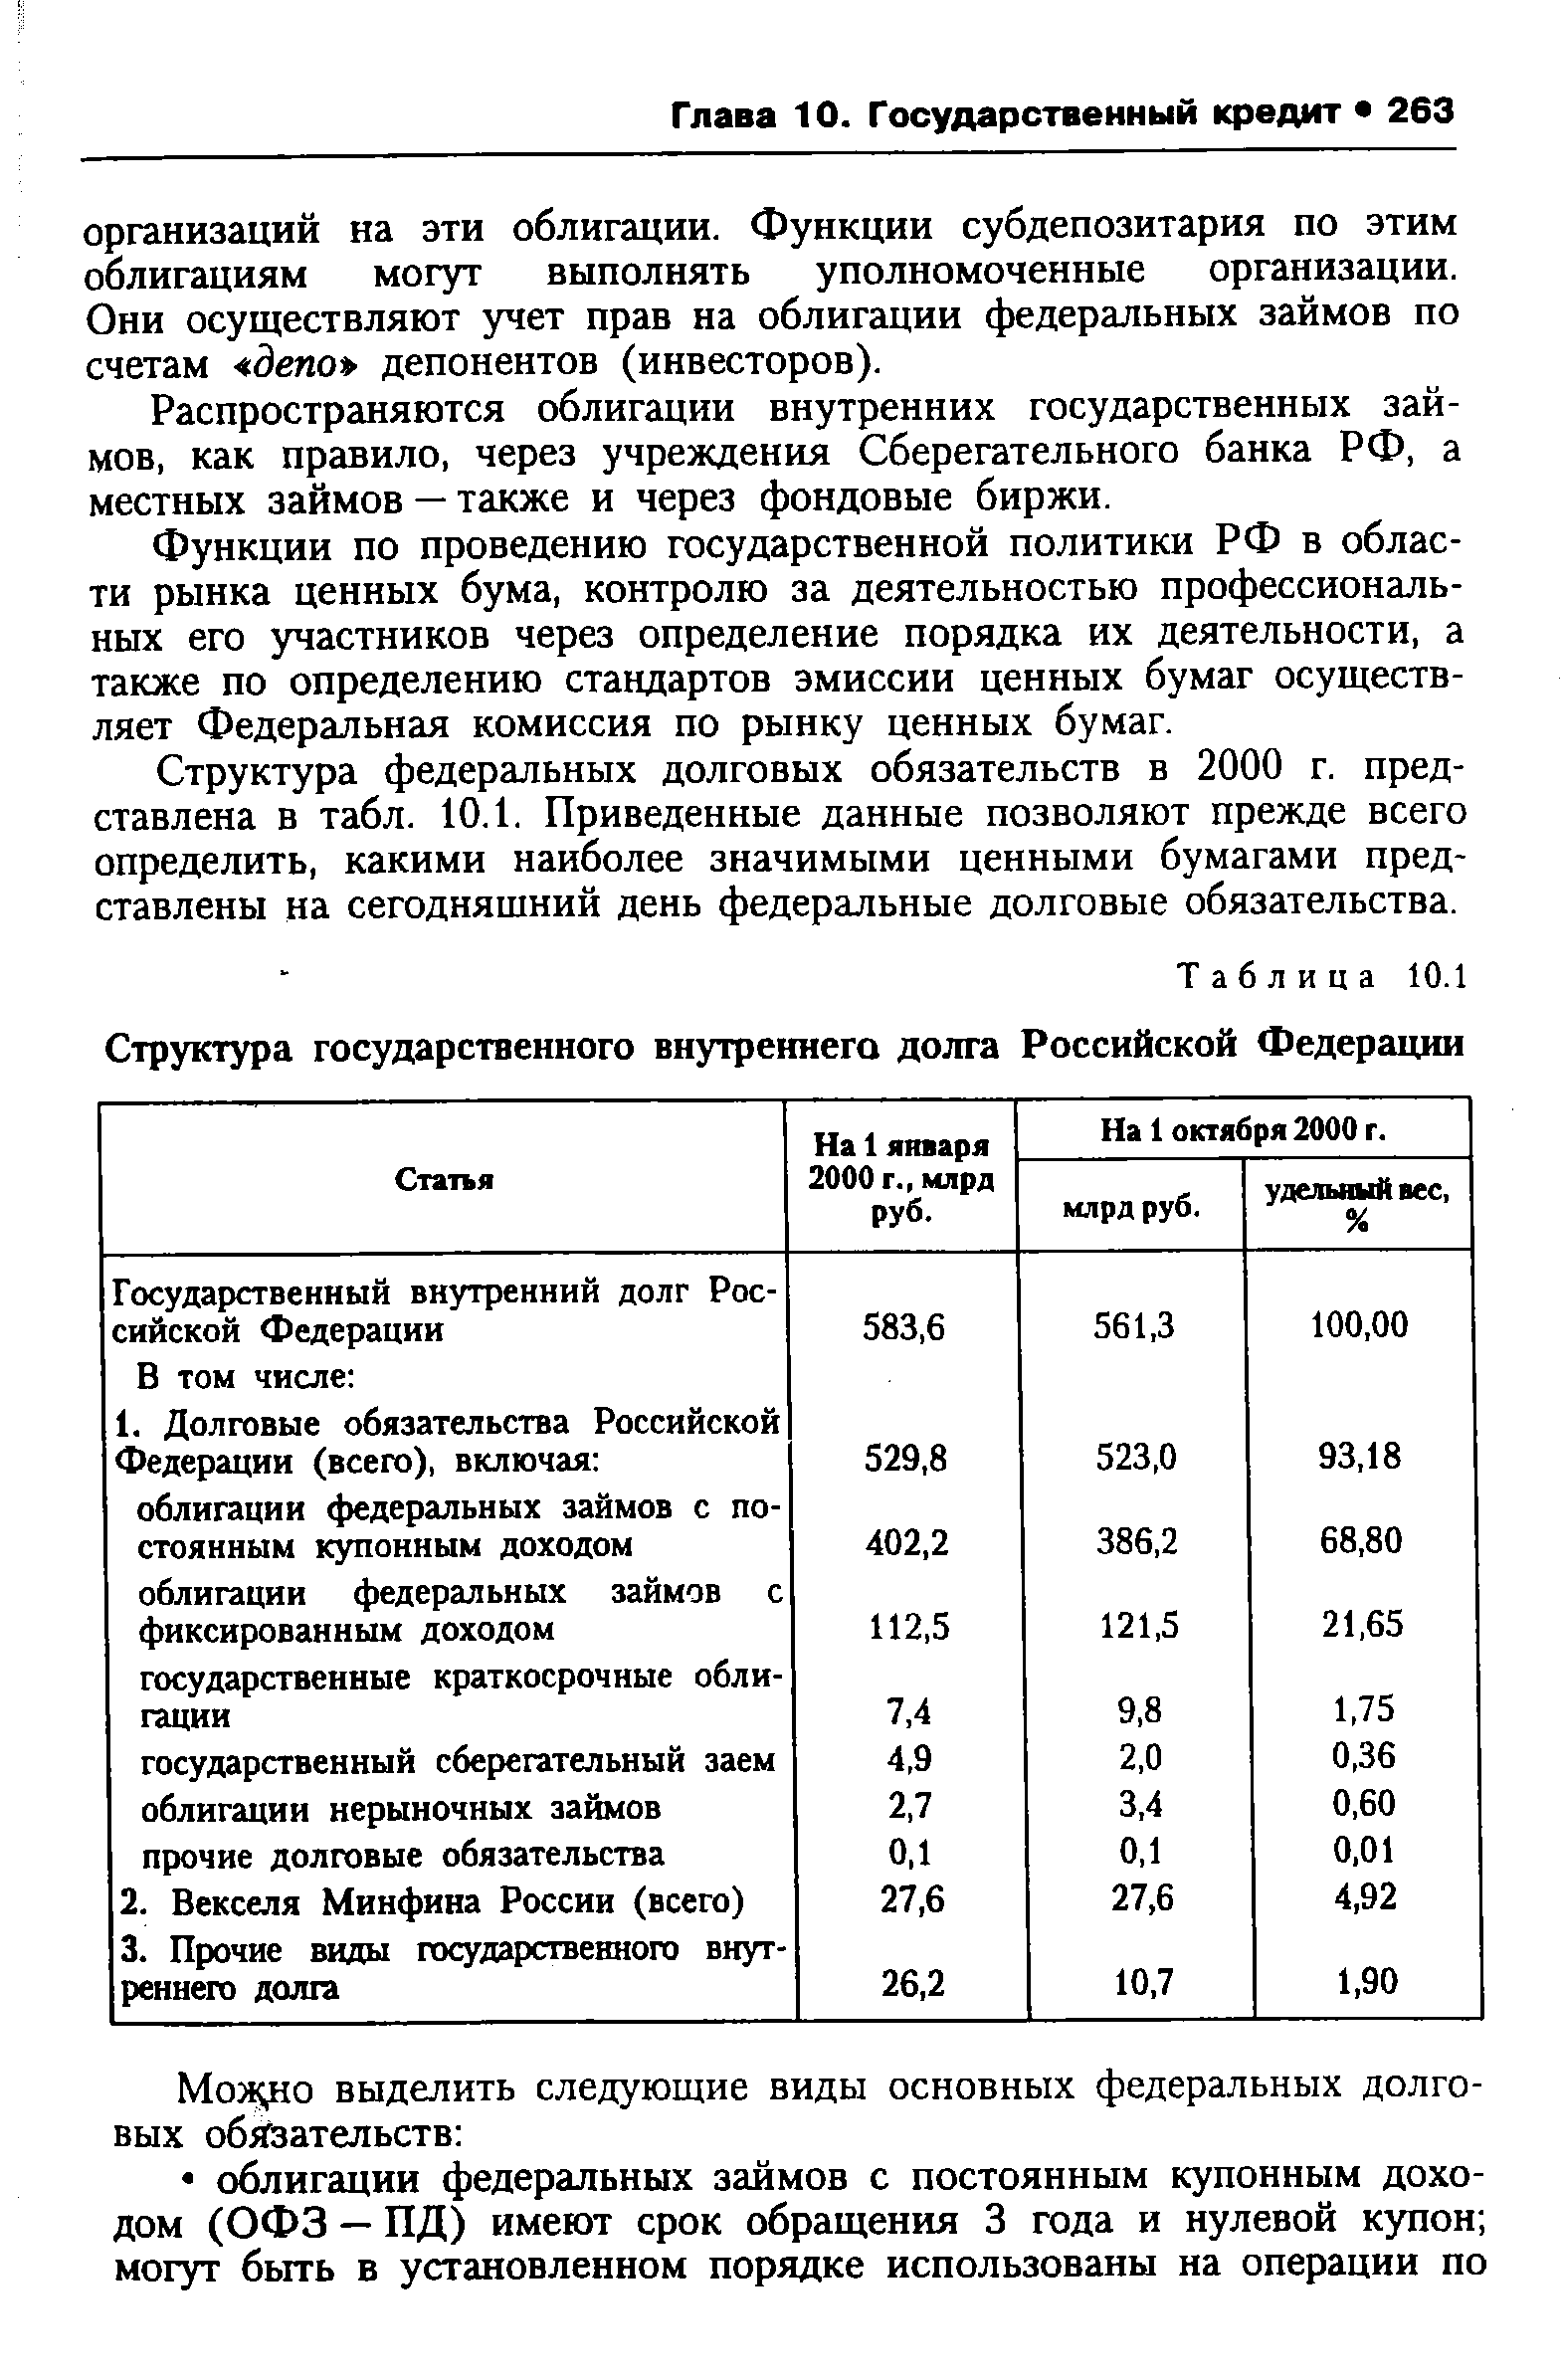 Таблица 10.1 Структура государственного внутреннего долга Российской Федерации
